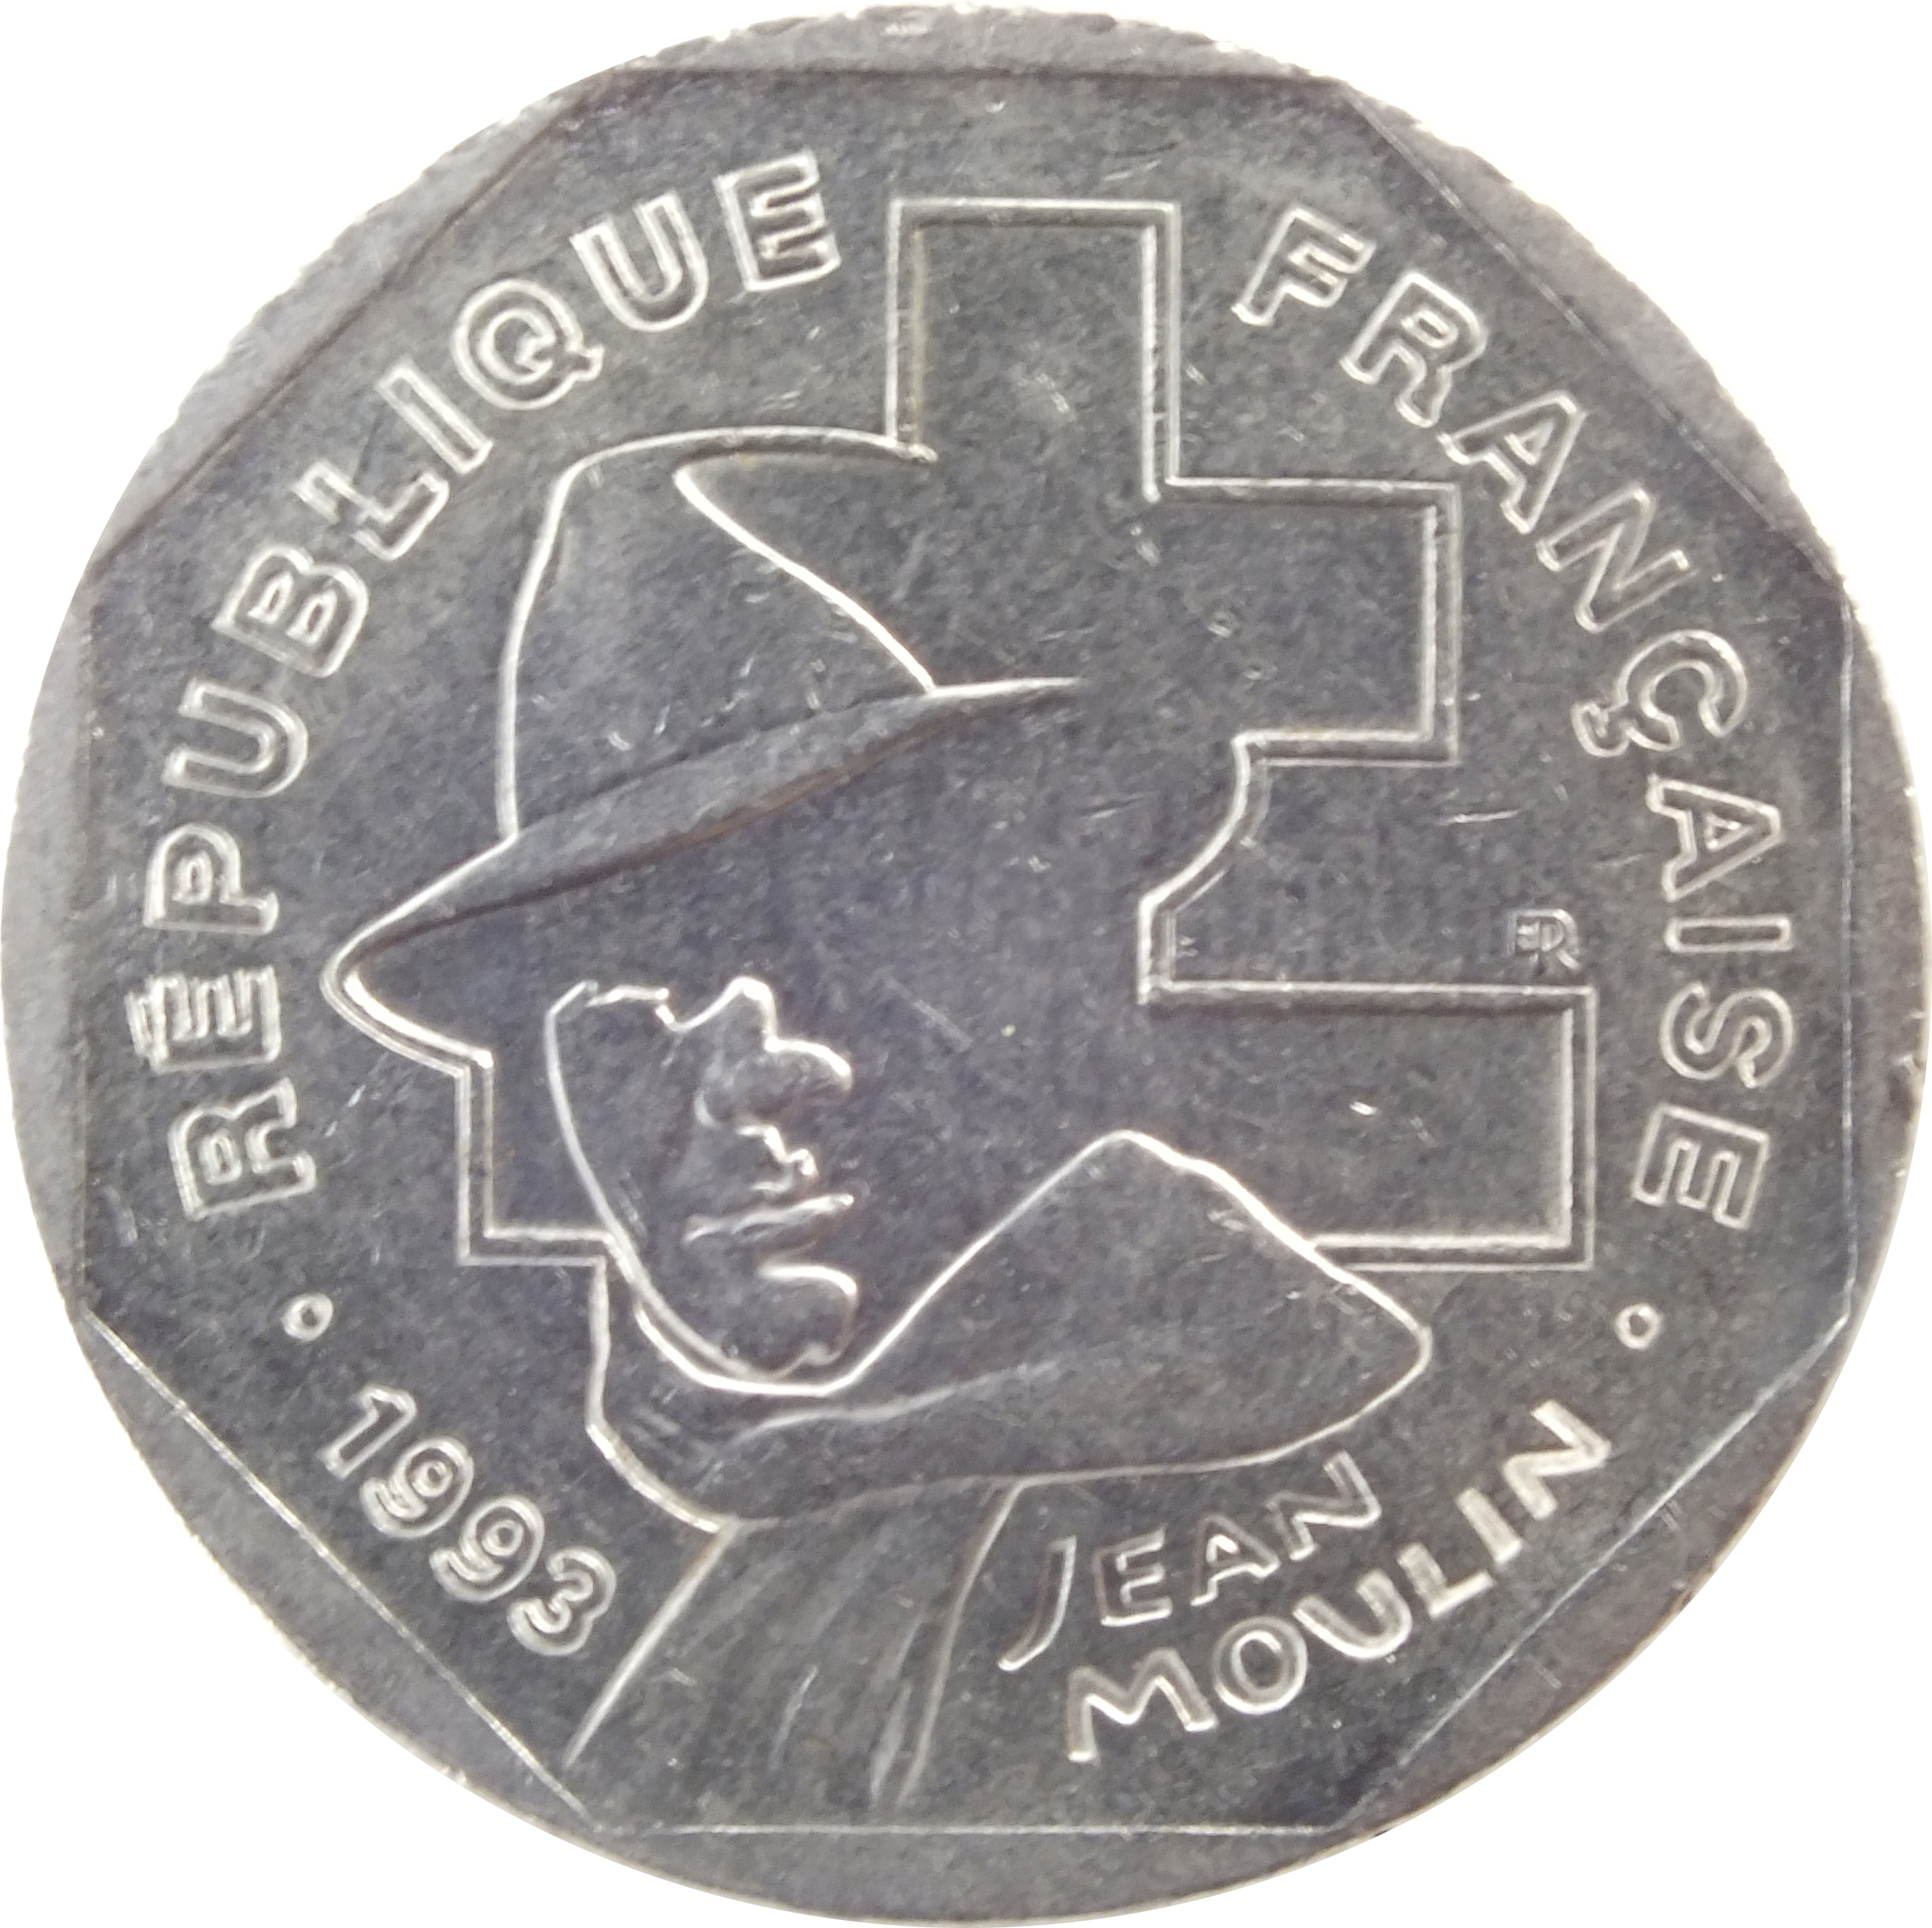 Французский франк к рублю. 2 Франка 1993. Монеты Франции 1993г. Монеты Франция 1/2 Франк. Французский Франк монета.